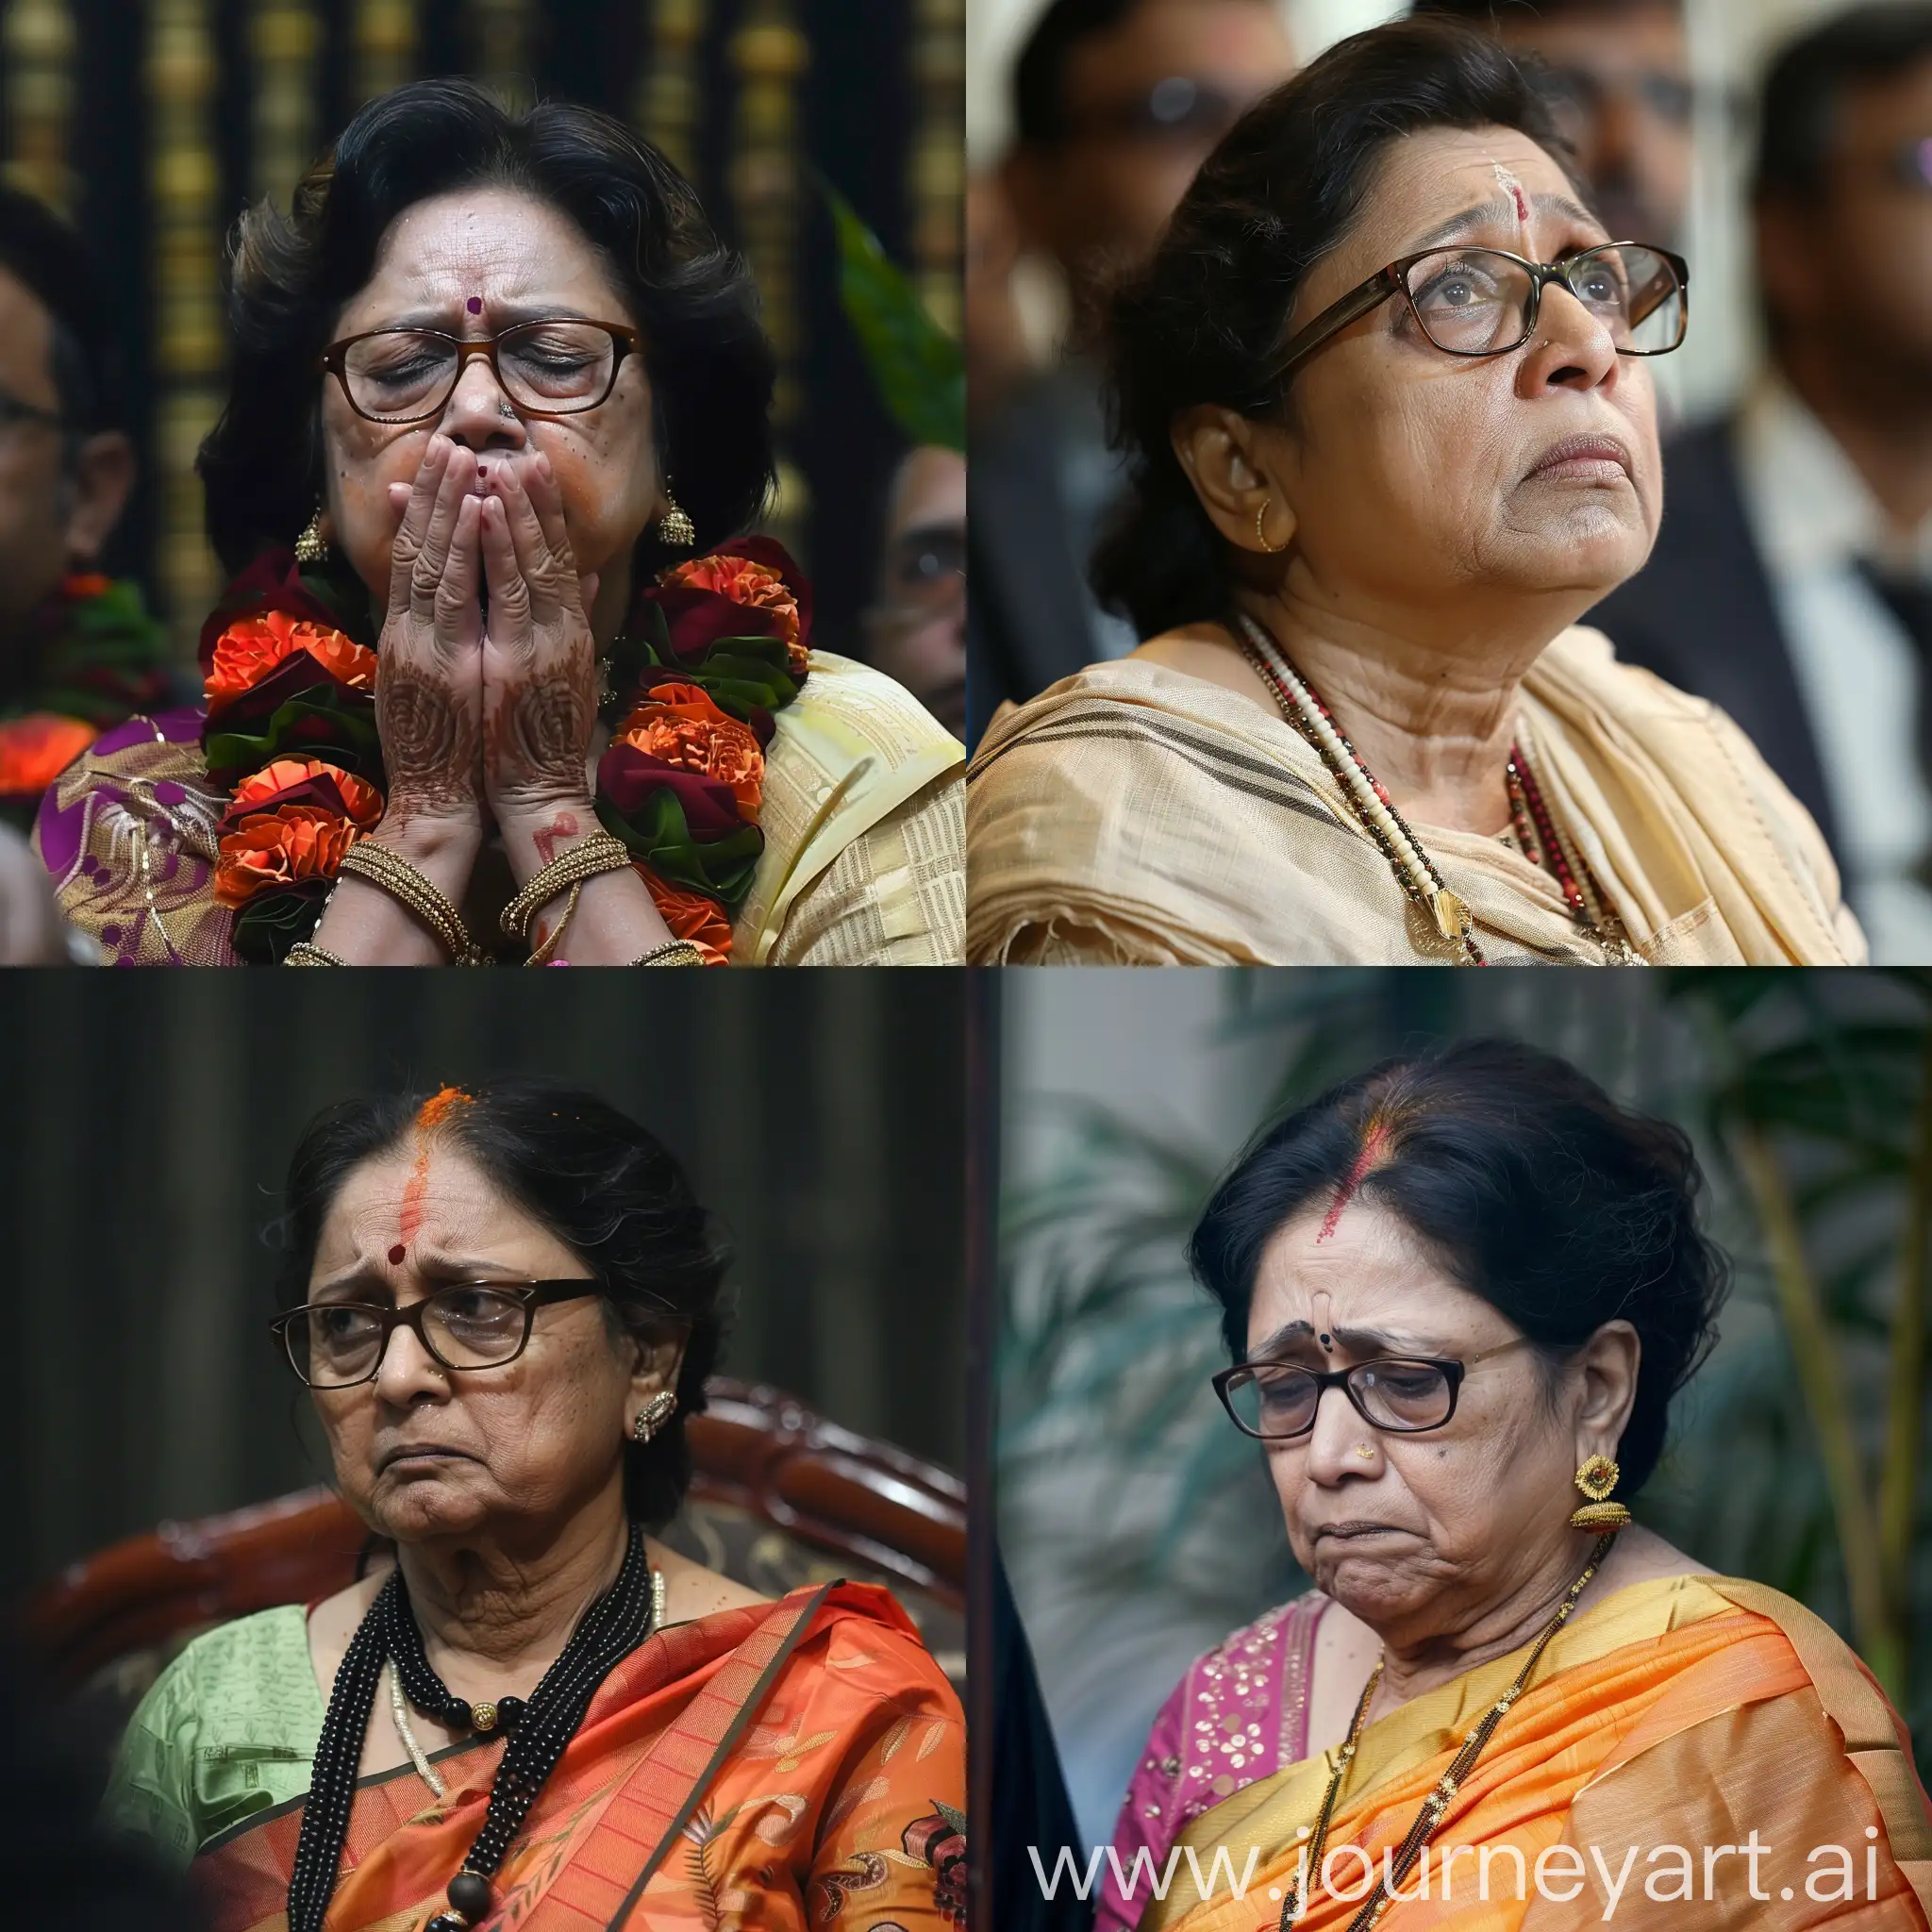 Mamata-Banerjee-Looking-Pensive-and-Reflective